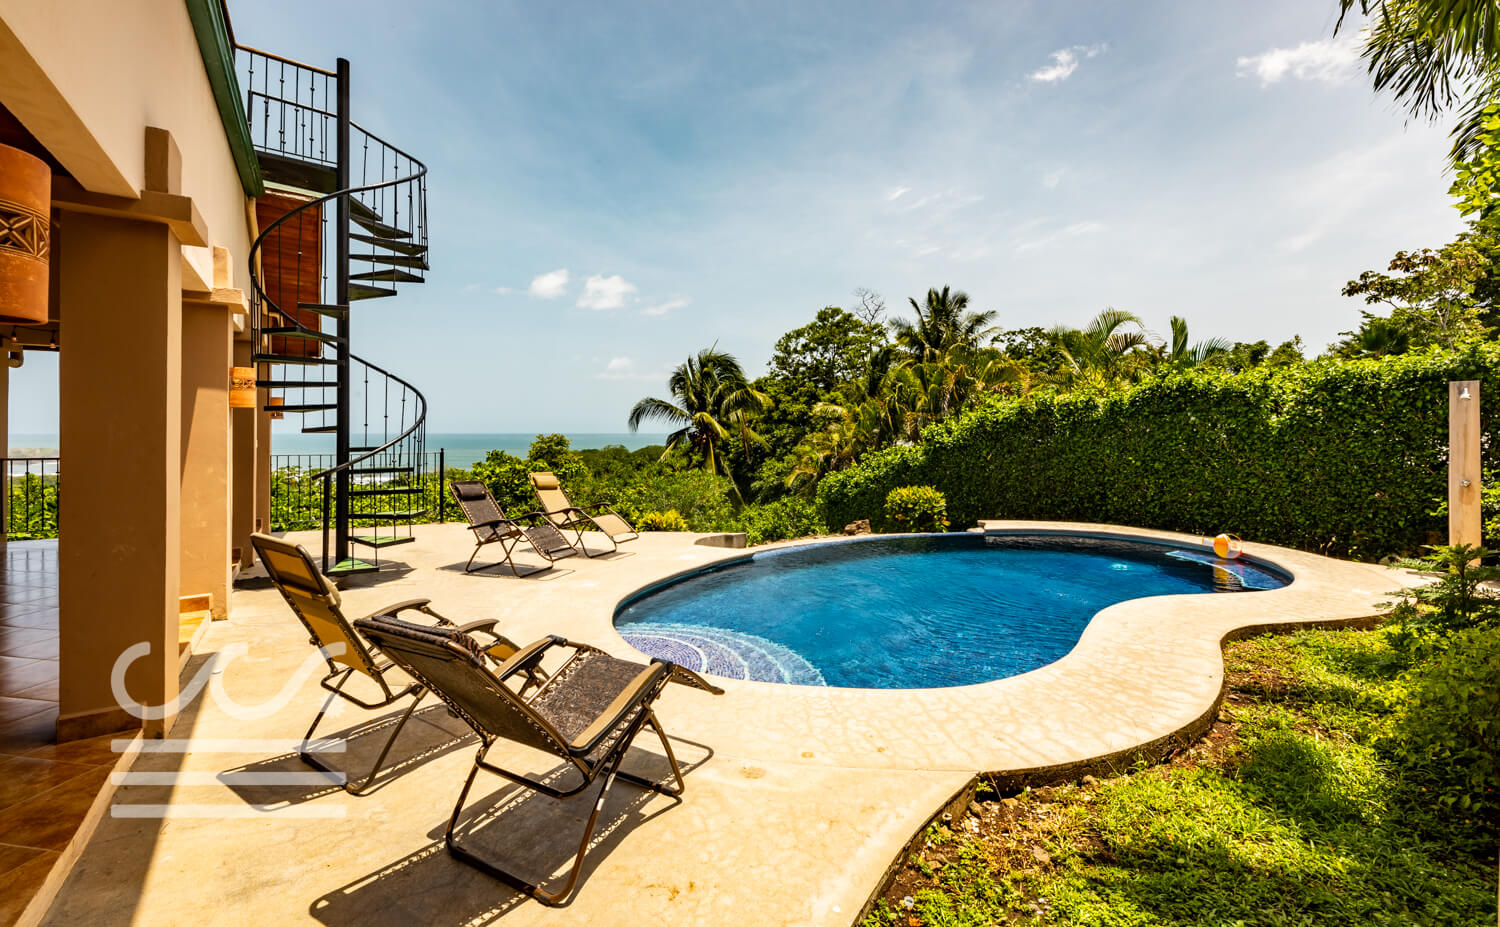 Casa-Carolina-Wanderlust-Realty-Real-Estate-Rentals-Nosara-Costa-Rica-5.jpg